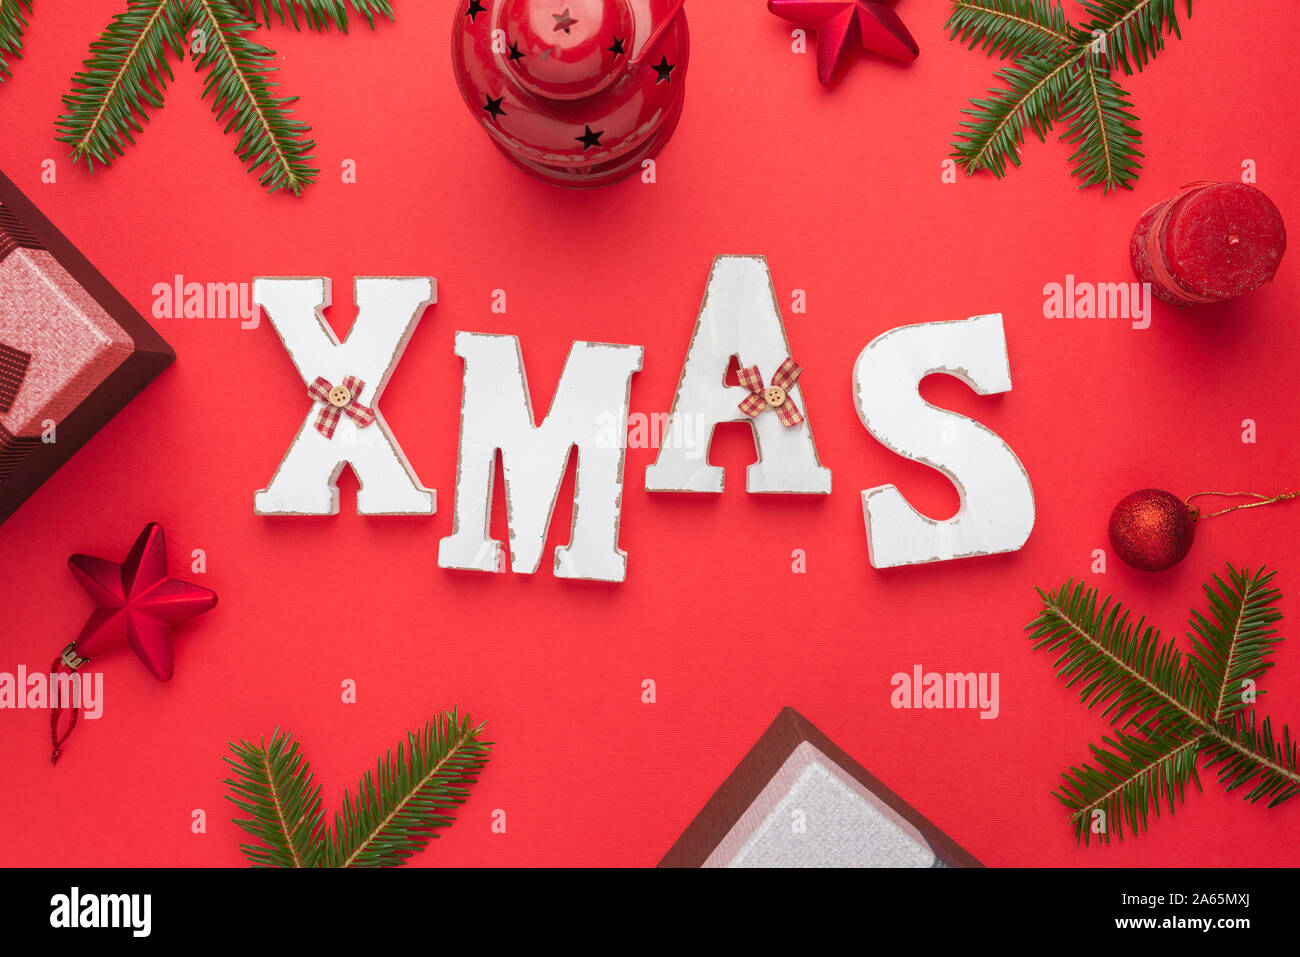 Letras decorativas navideñas rodeado con adornos de Navidad y regalos. Navidad, Año Nuevo composición sobre la superficie roja. Sentar planas, vista superior. Foto de stock